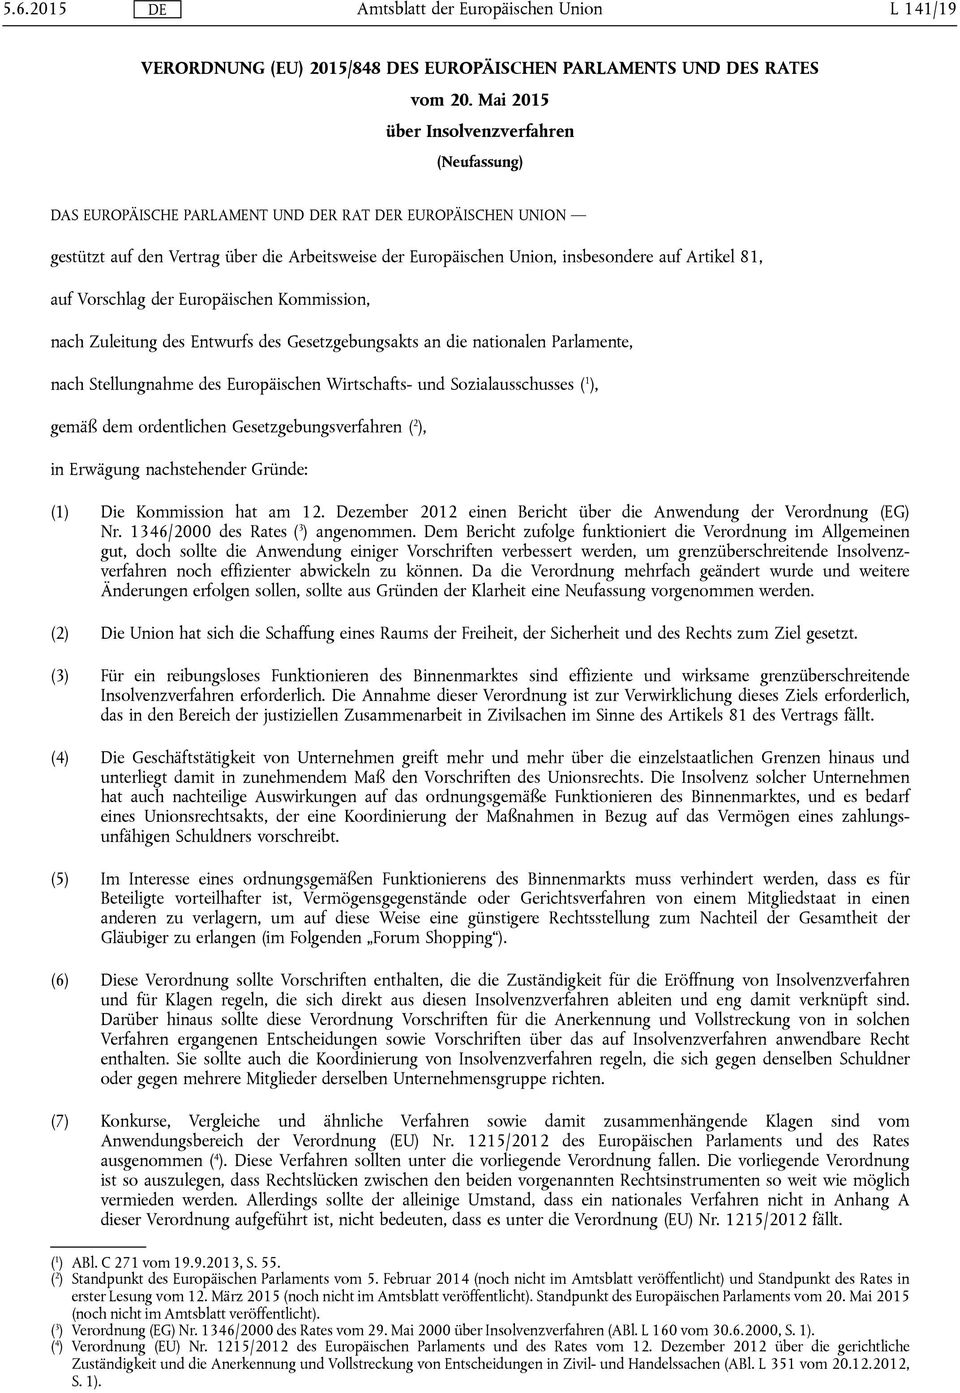 81, auf Vorschlag der Europäischen Kommission, nach Zuleitung des Entwurfs des Gesetzgebungsakts an die nationalen Parlamente, nach Stellungnahme des Europäischen Wirtschafts- und Sozialausschusses (